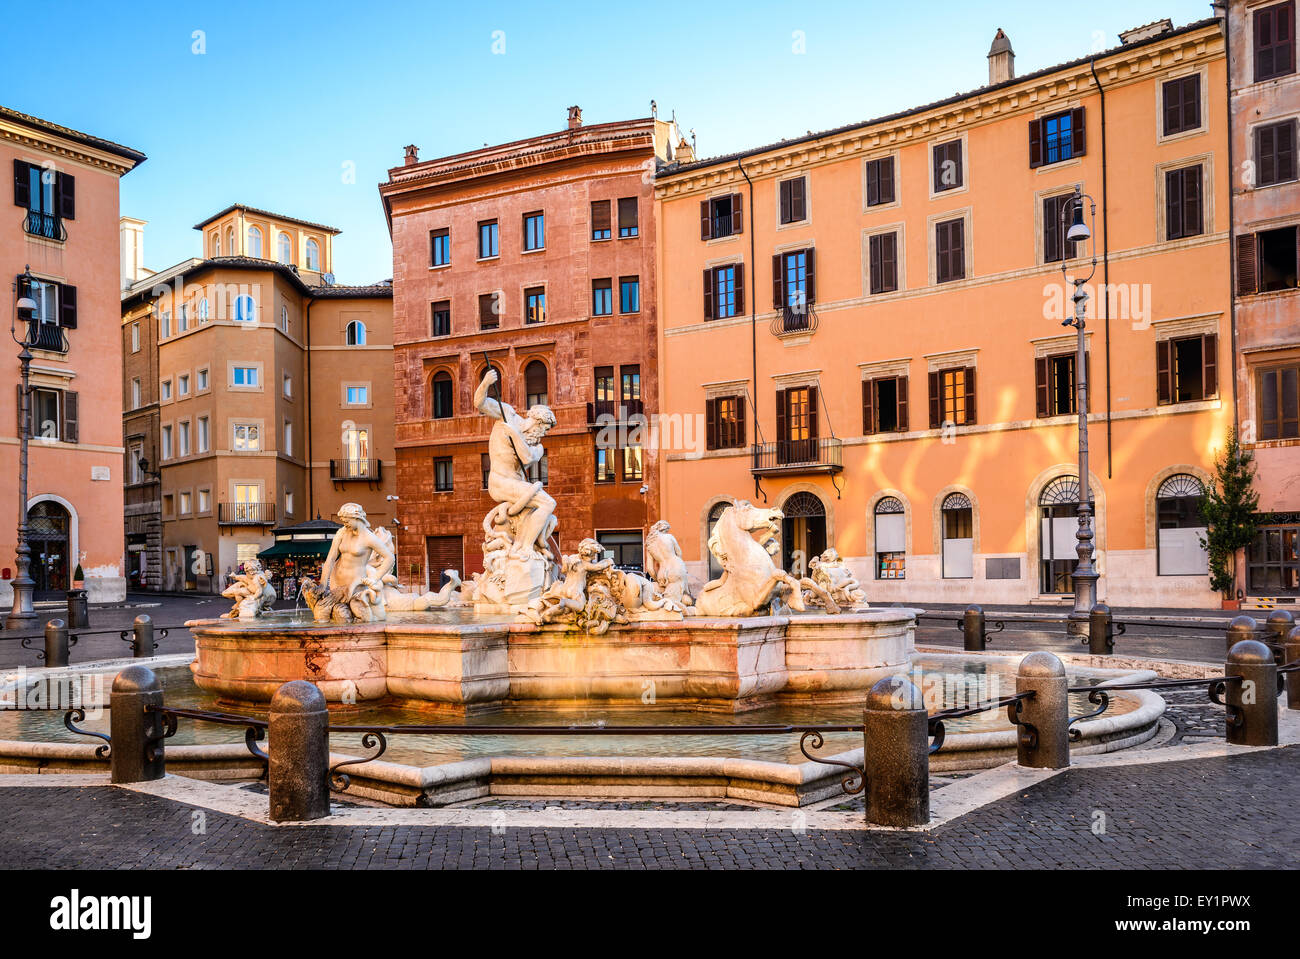 Rom, Italien. Der Brunnen von Neptun am Piazza Navona. Dieser Brunnen von 1576 zeigt den Gott Neptun. Stockfoto